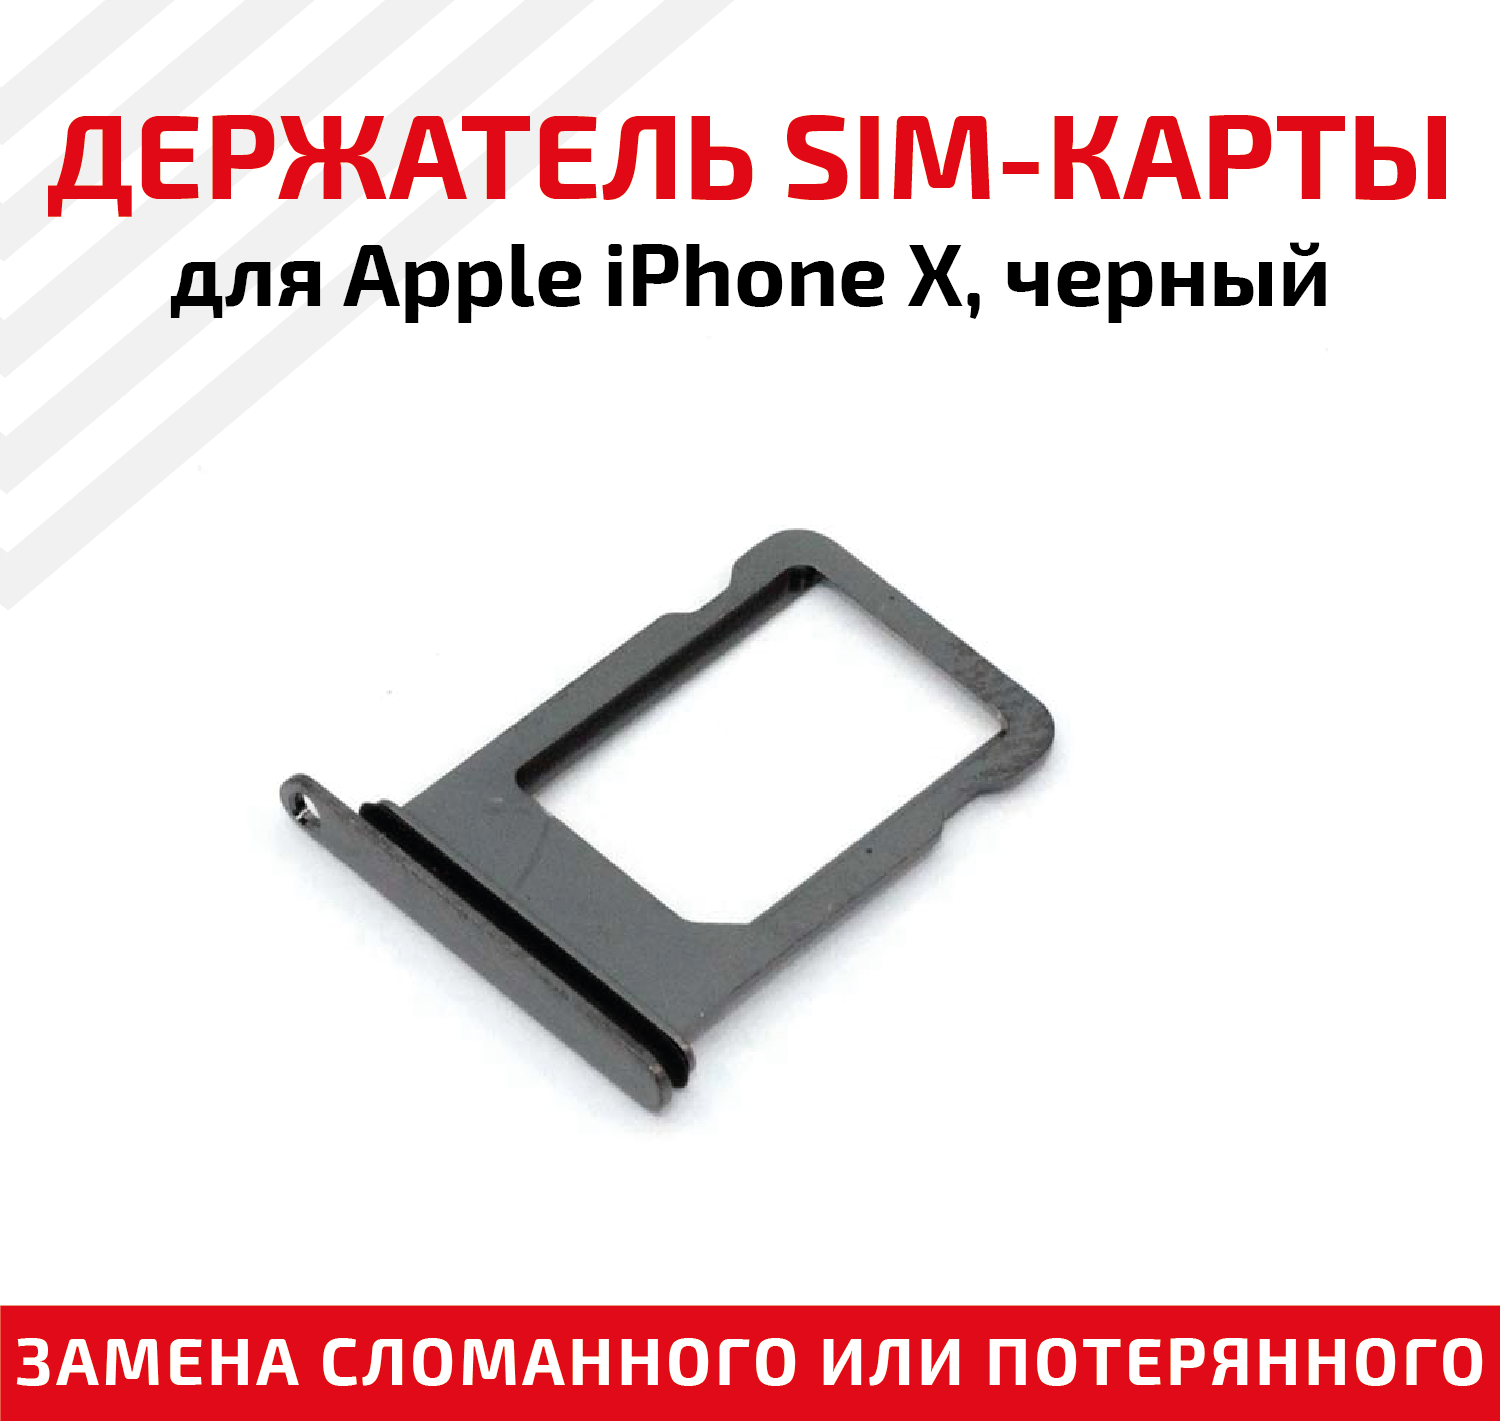 Лоток (держатель, контейнер, слот) SIM-карты для мобильного телефона (смартфона) Apple iPhone X, черный